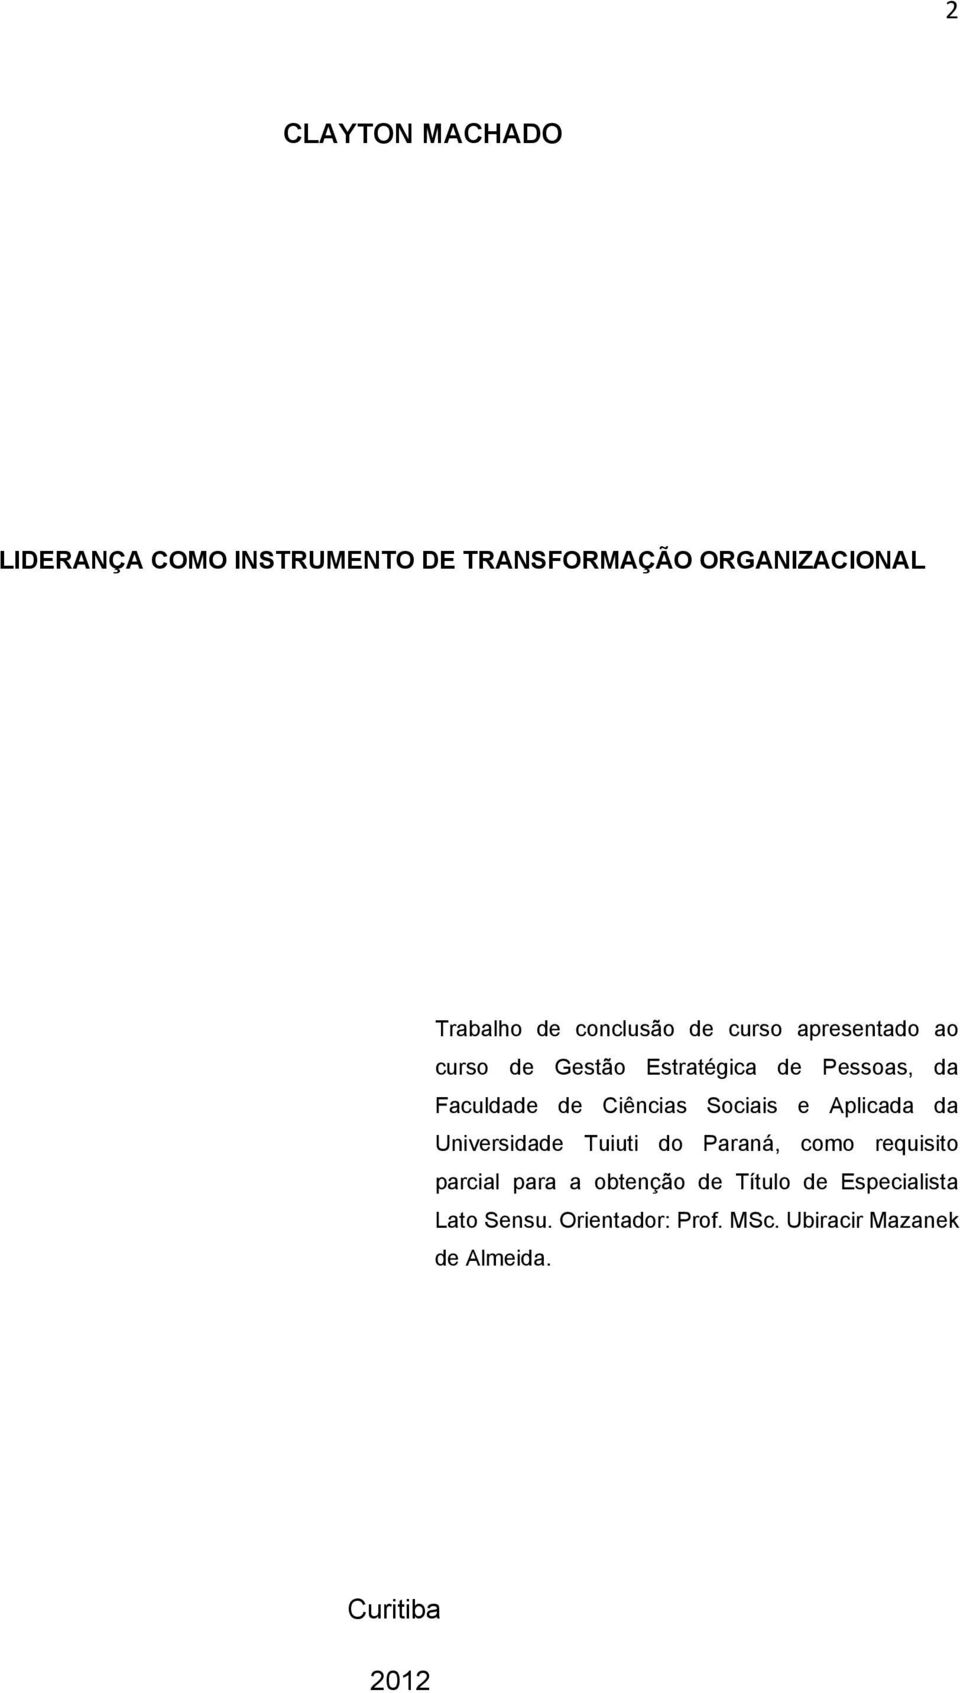 Ciências Sociais e Aplicada da Universidade Tuiuti do Paraná, como requisito parcial para a